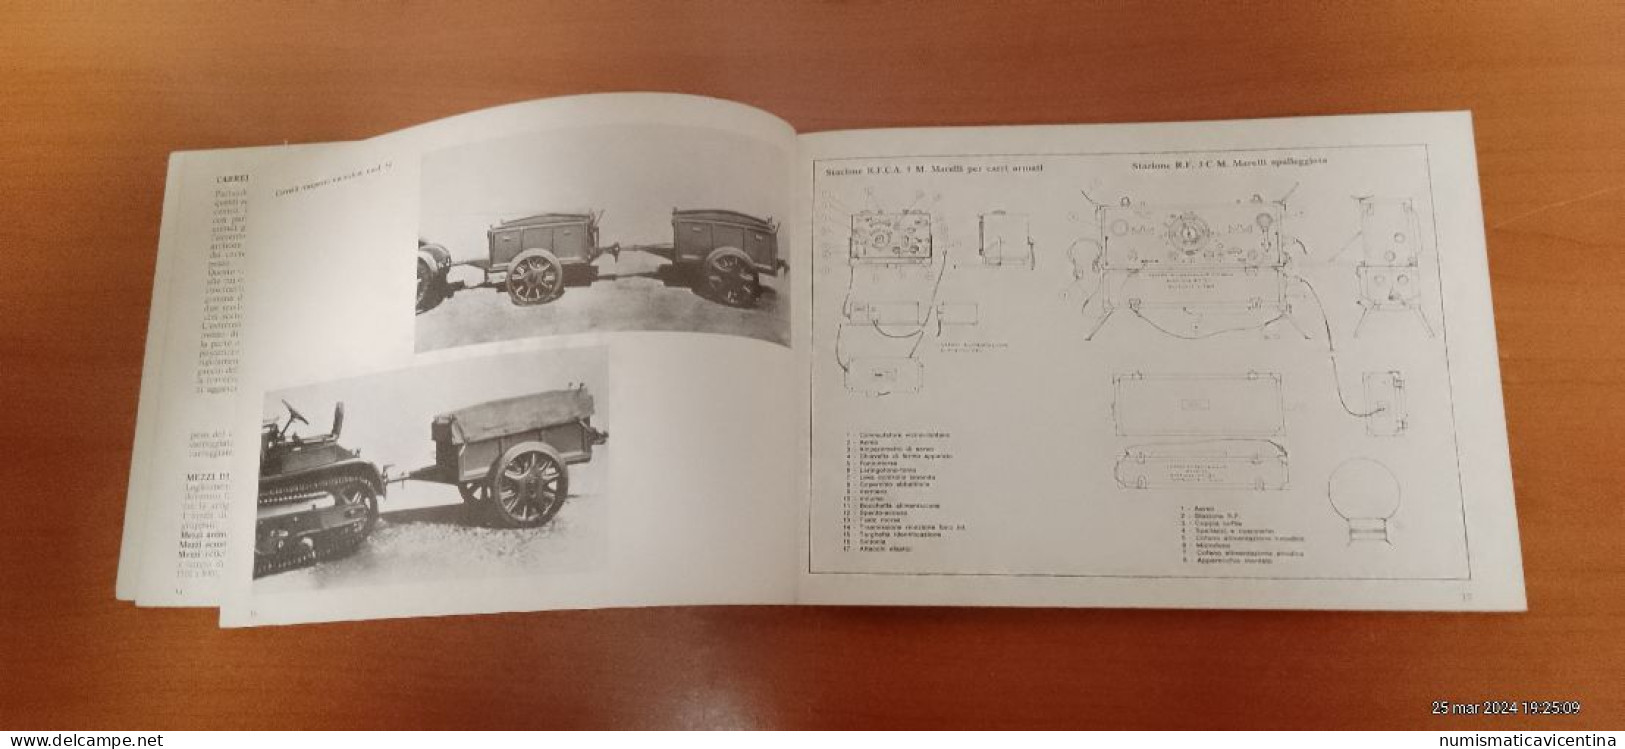 Libro artiglierie semoventi armi portatili Regio Esercito dal 1900 al 1943 con foto